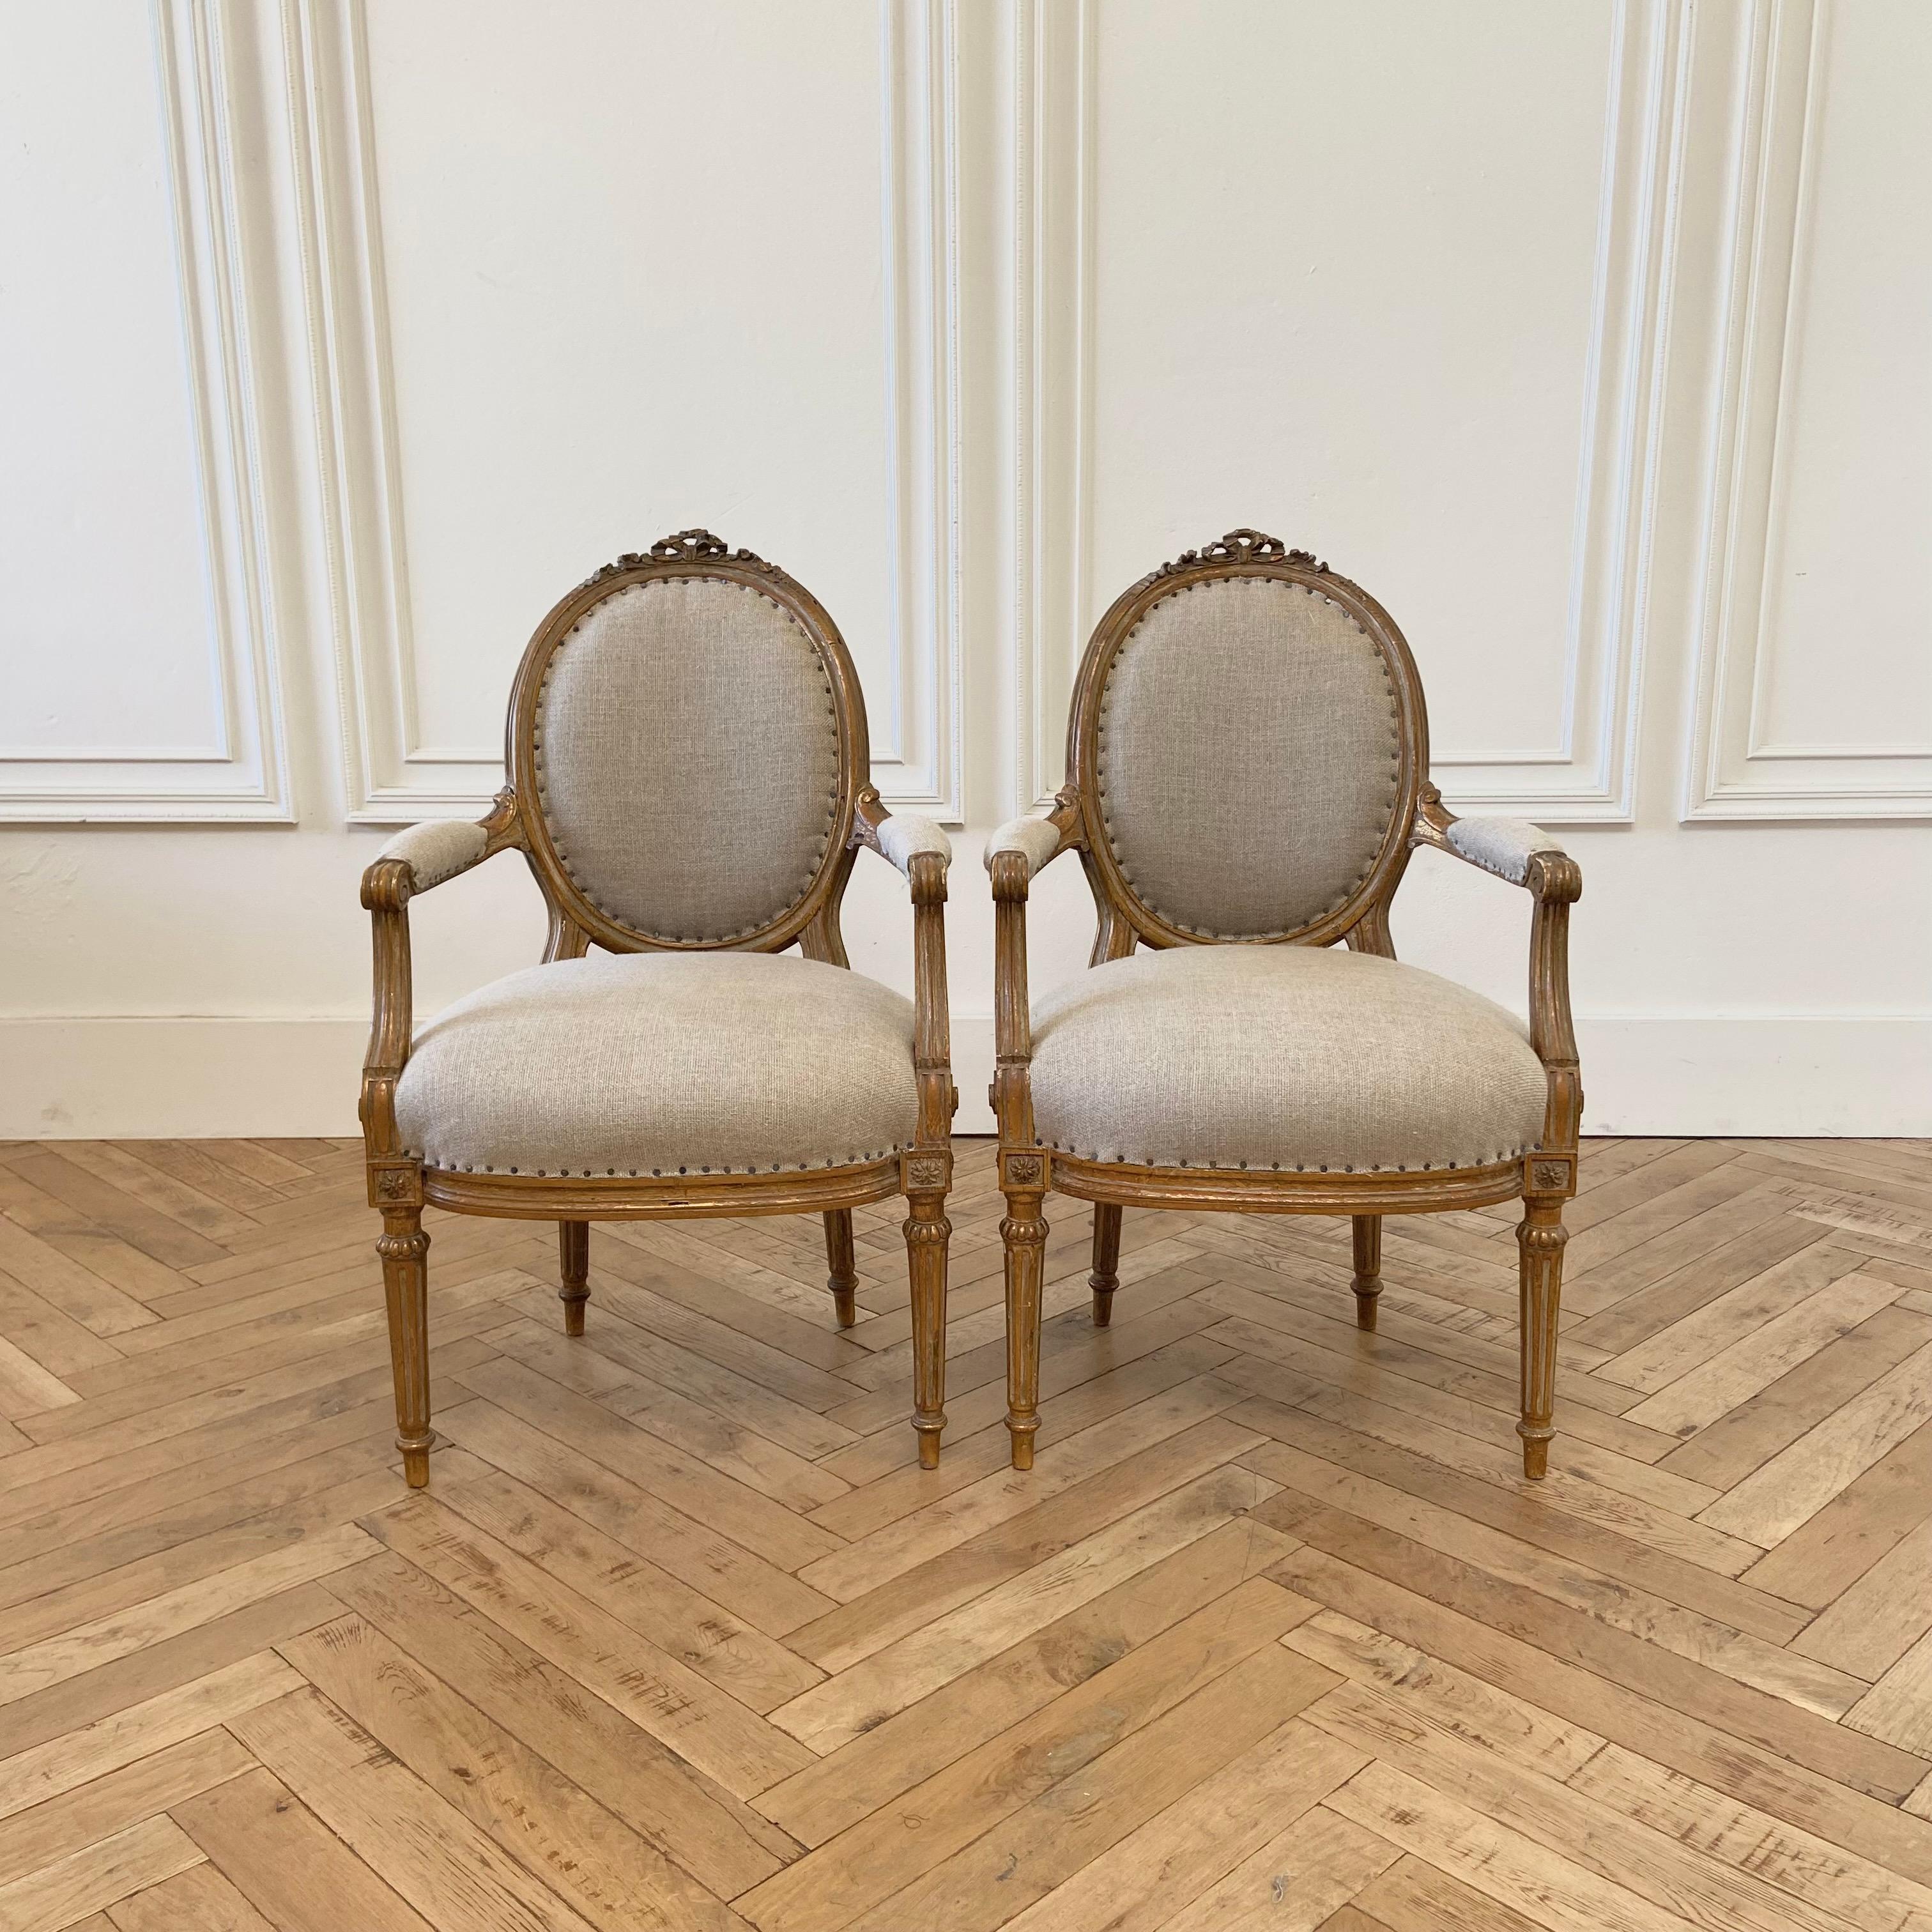 Antikes Paar offener Sessel aus vergoldetem Holz, gepolstert mit natürlichem Leinen
Größe:
23 